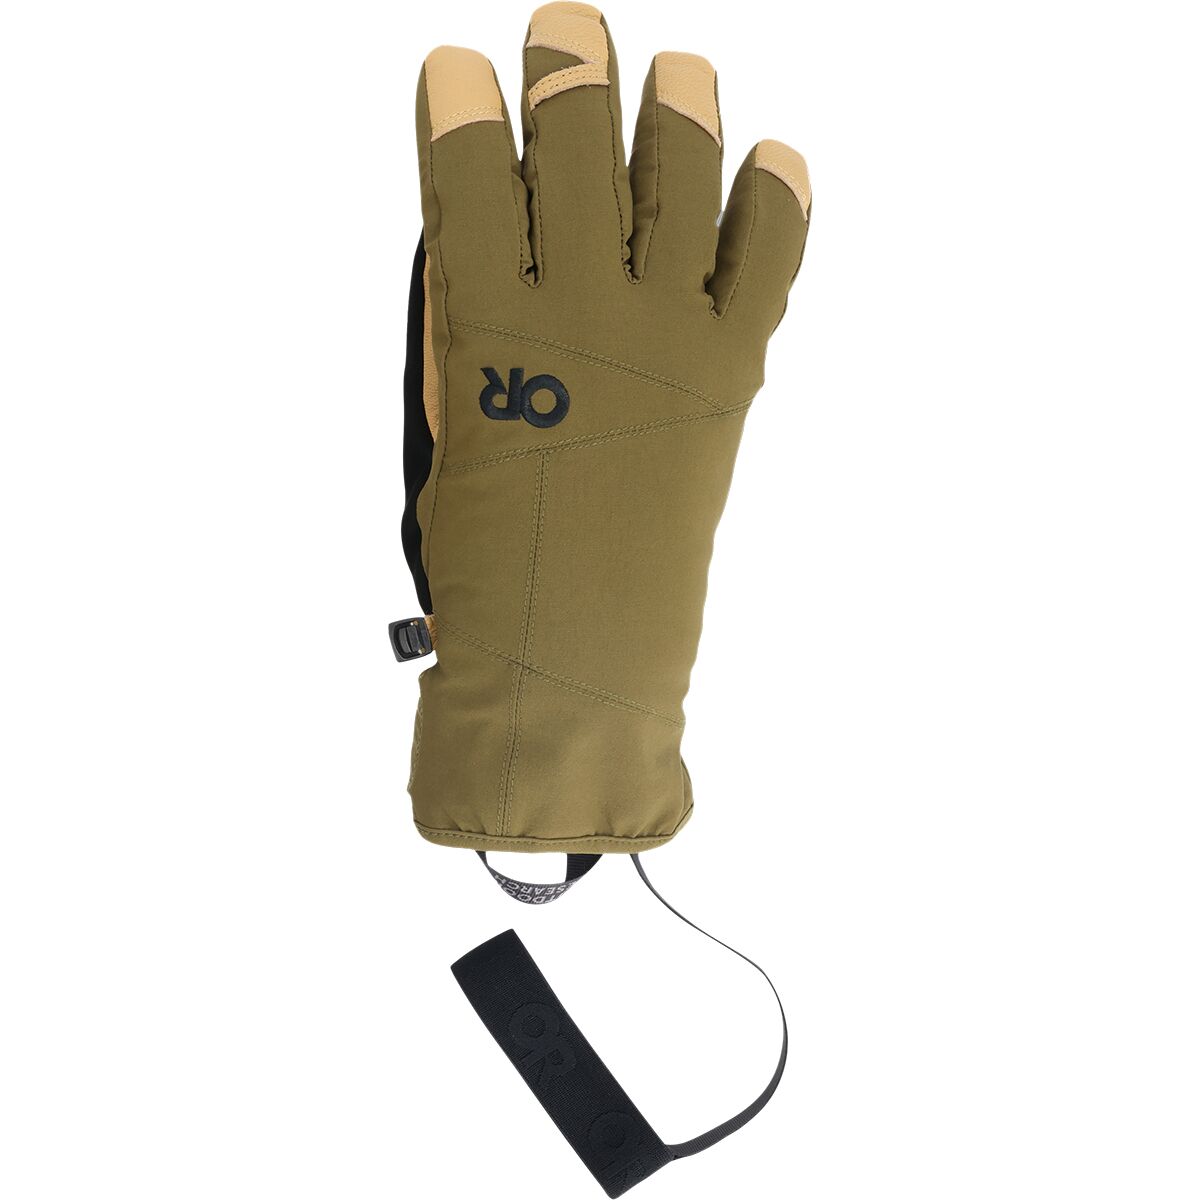 Outdoor Research Illuminator Sensor Glove - Men's Loden